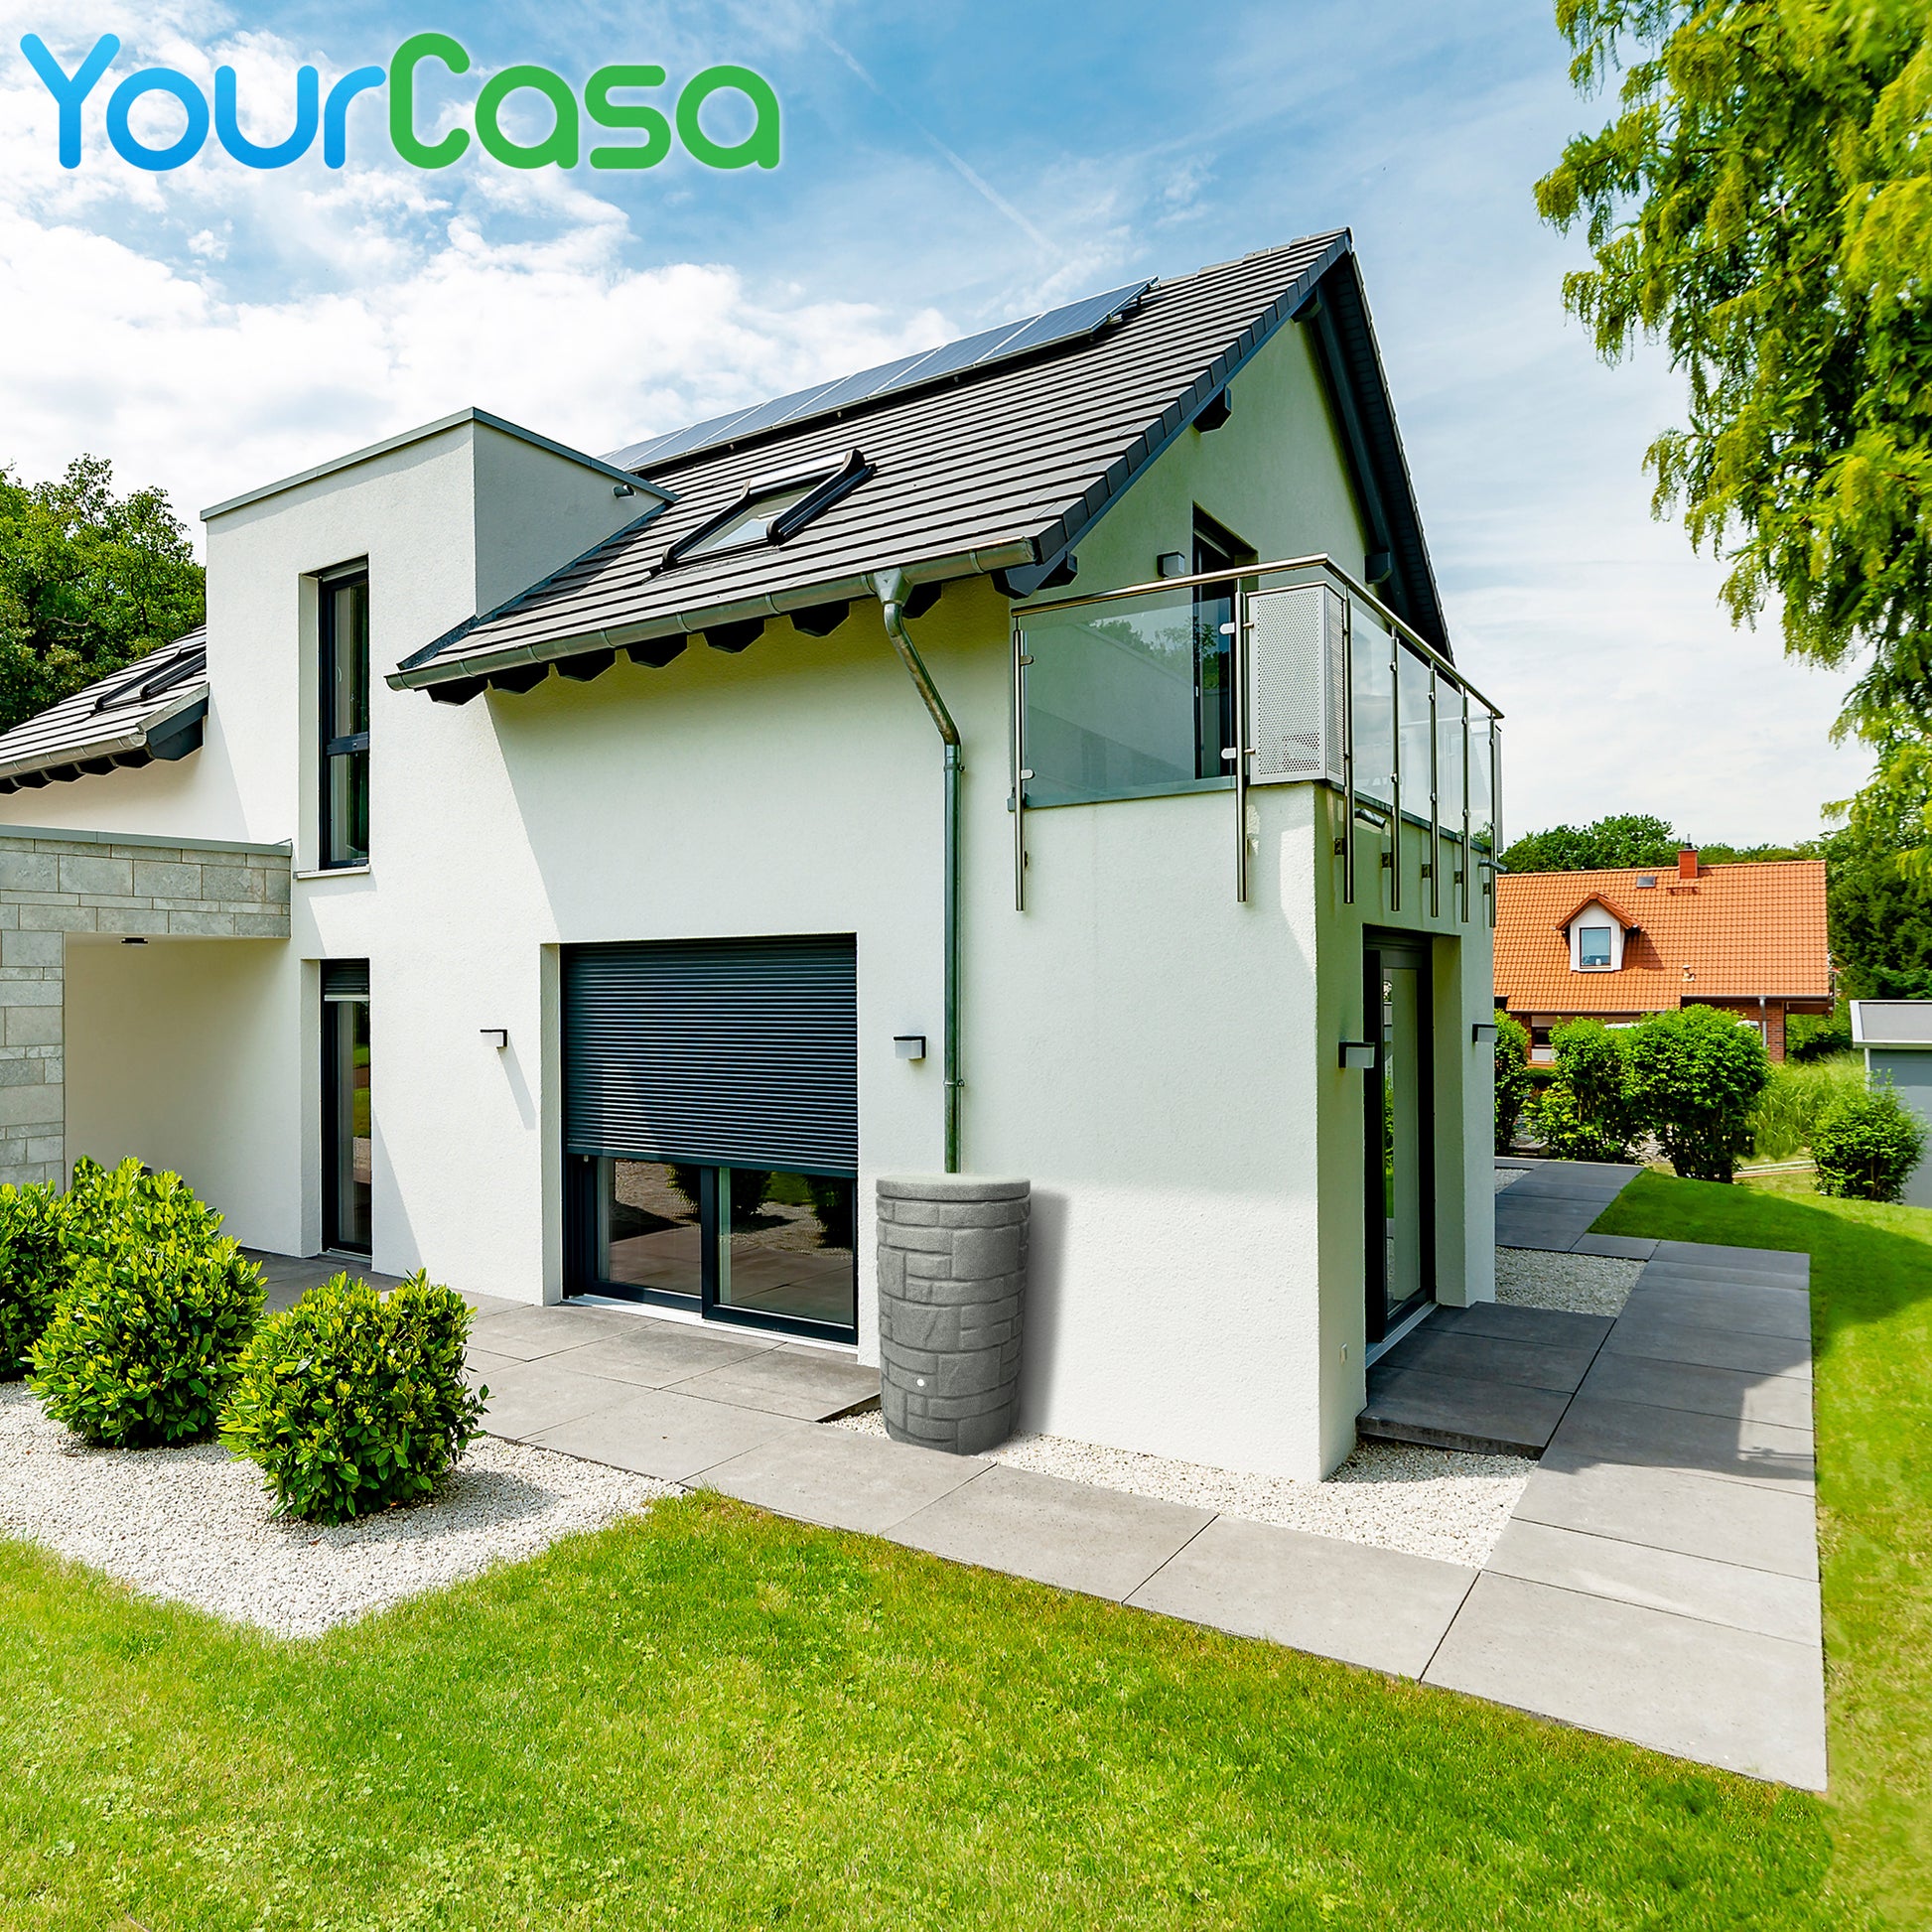 Modernes zweistöckiges Haus mit Balkon, Garage und angelegtem Garten ausgestattet mit einer YourCasa Regentonne [StoneRain] - Frostsicher & UV-beständig von yourcasa-de.